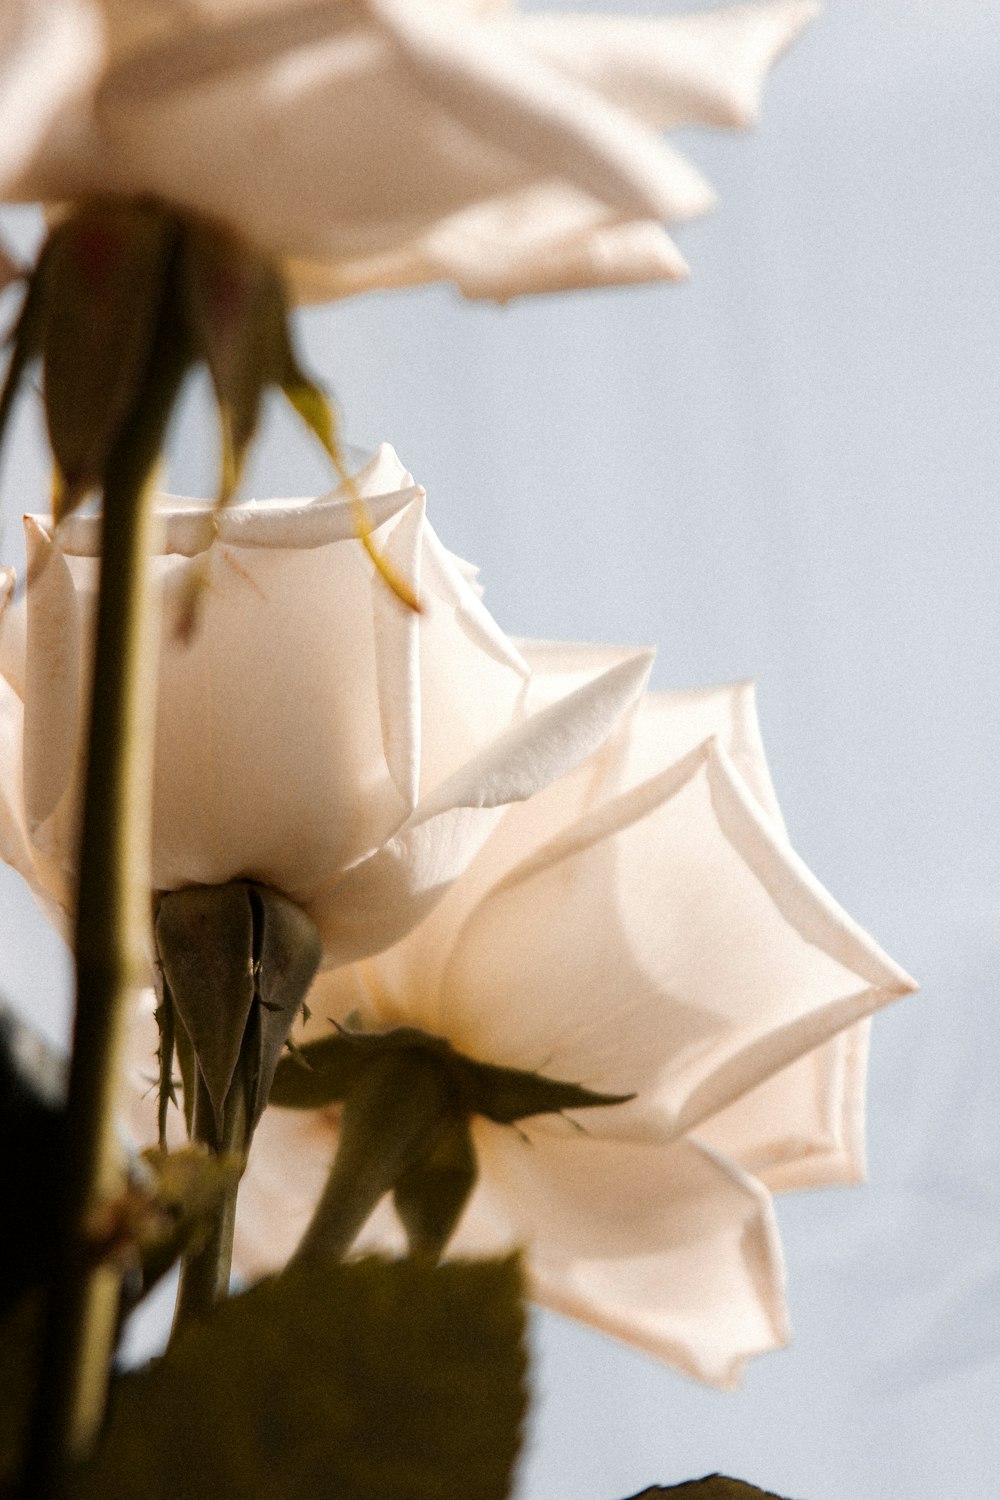 클로즈업 사진의 흰 장미